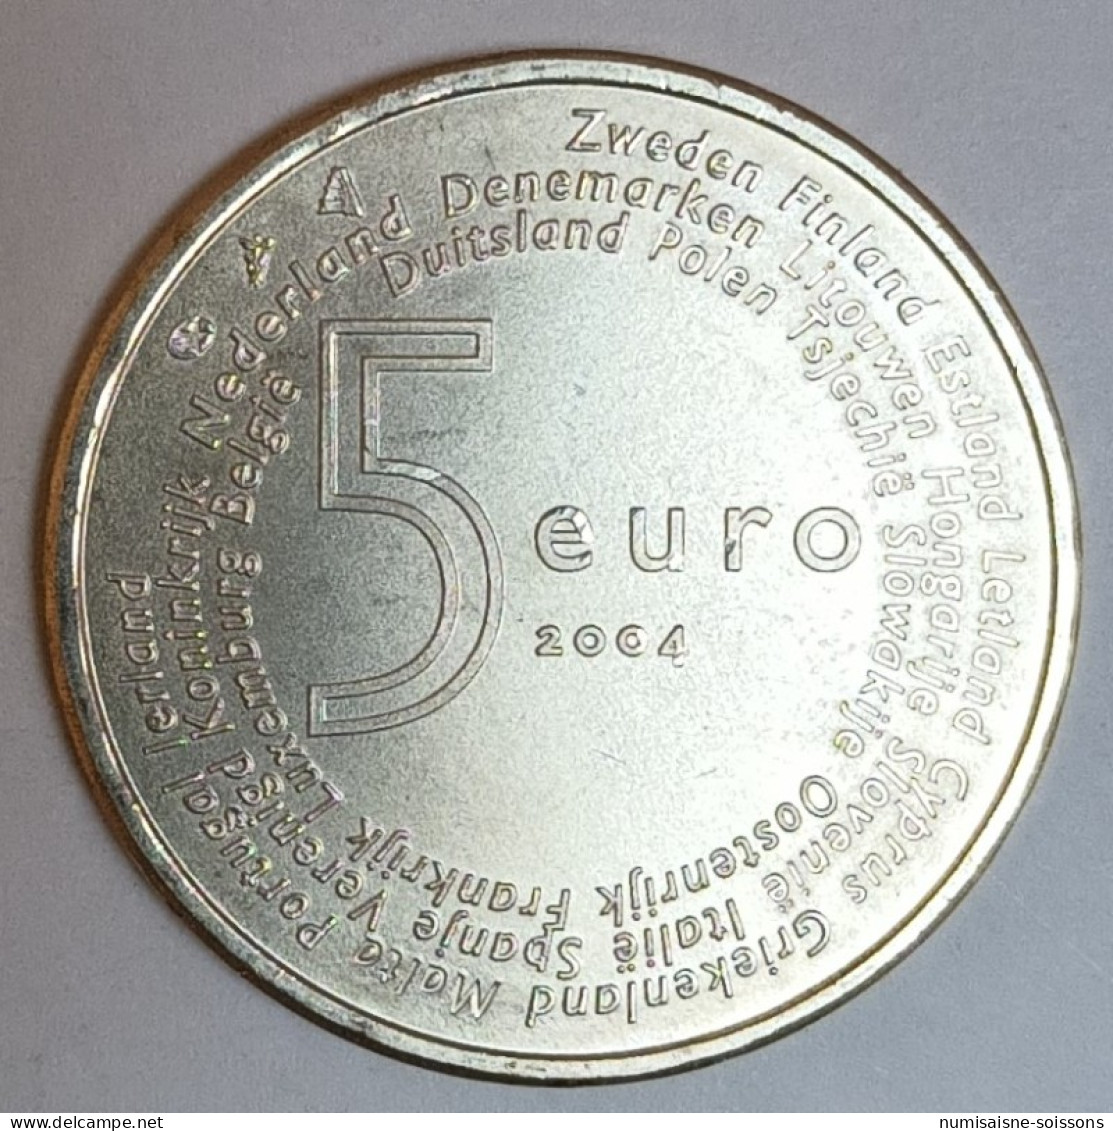 PAYS BAS - KM 252 - 5 EURO 2004 - ELARGISSEMENT DE L'UNION EUROPEENNE - ARGENT - SPL - Nederland